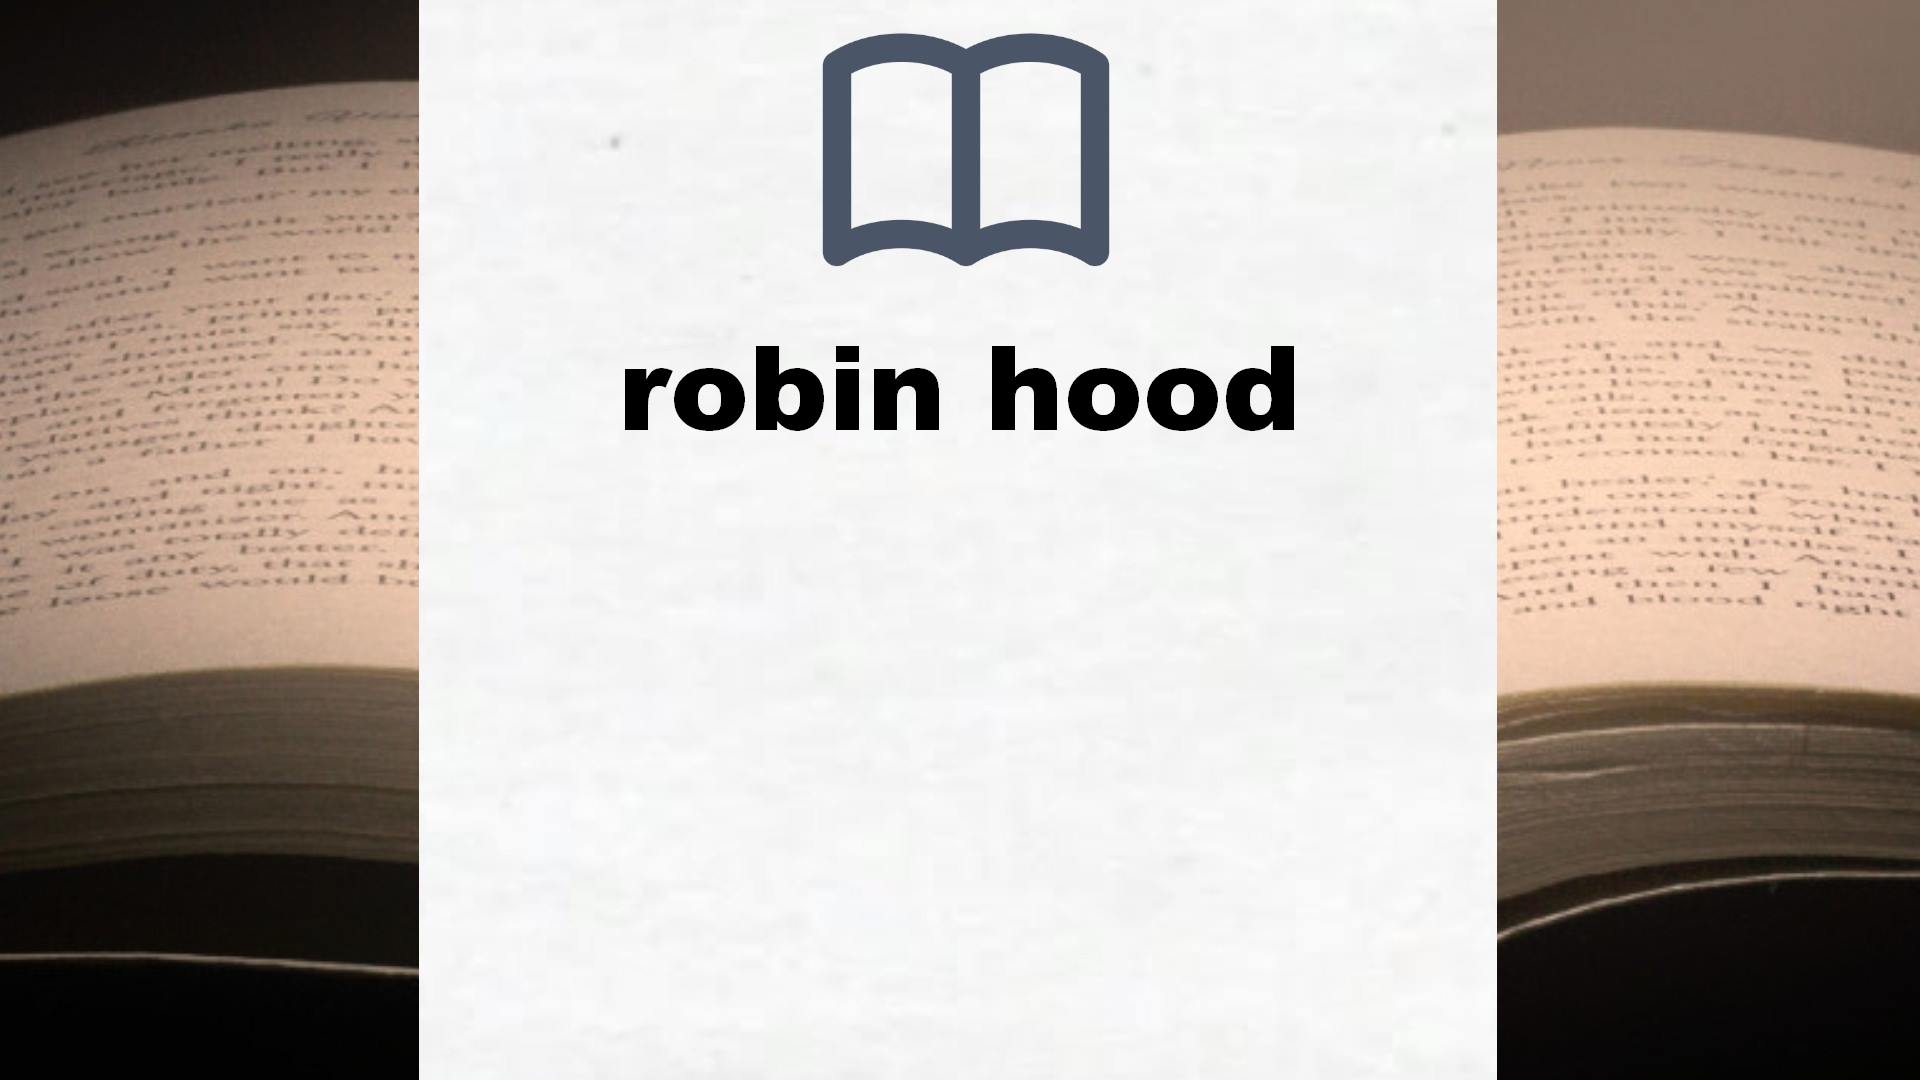 Libros sobre robin hood